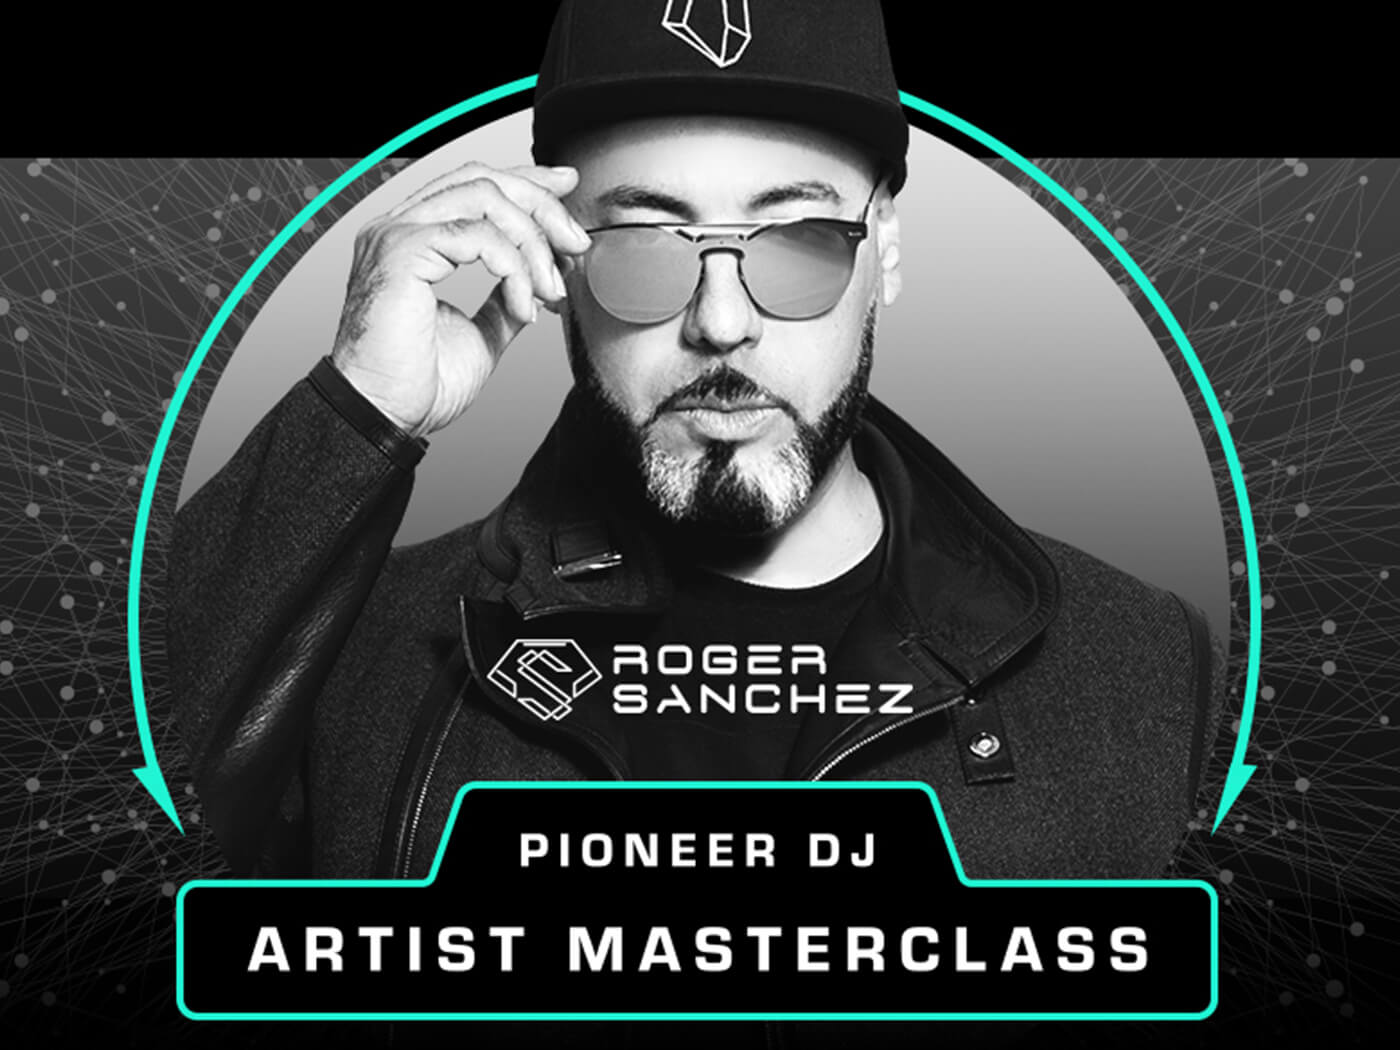 Pioneer DJ Roger Sanchez